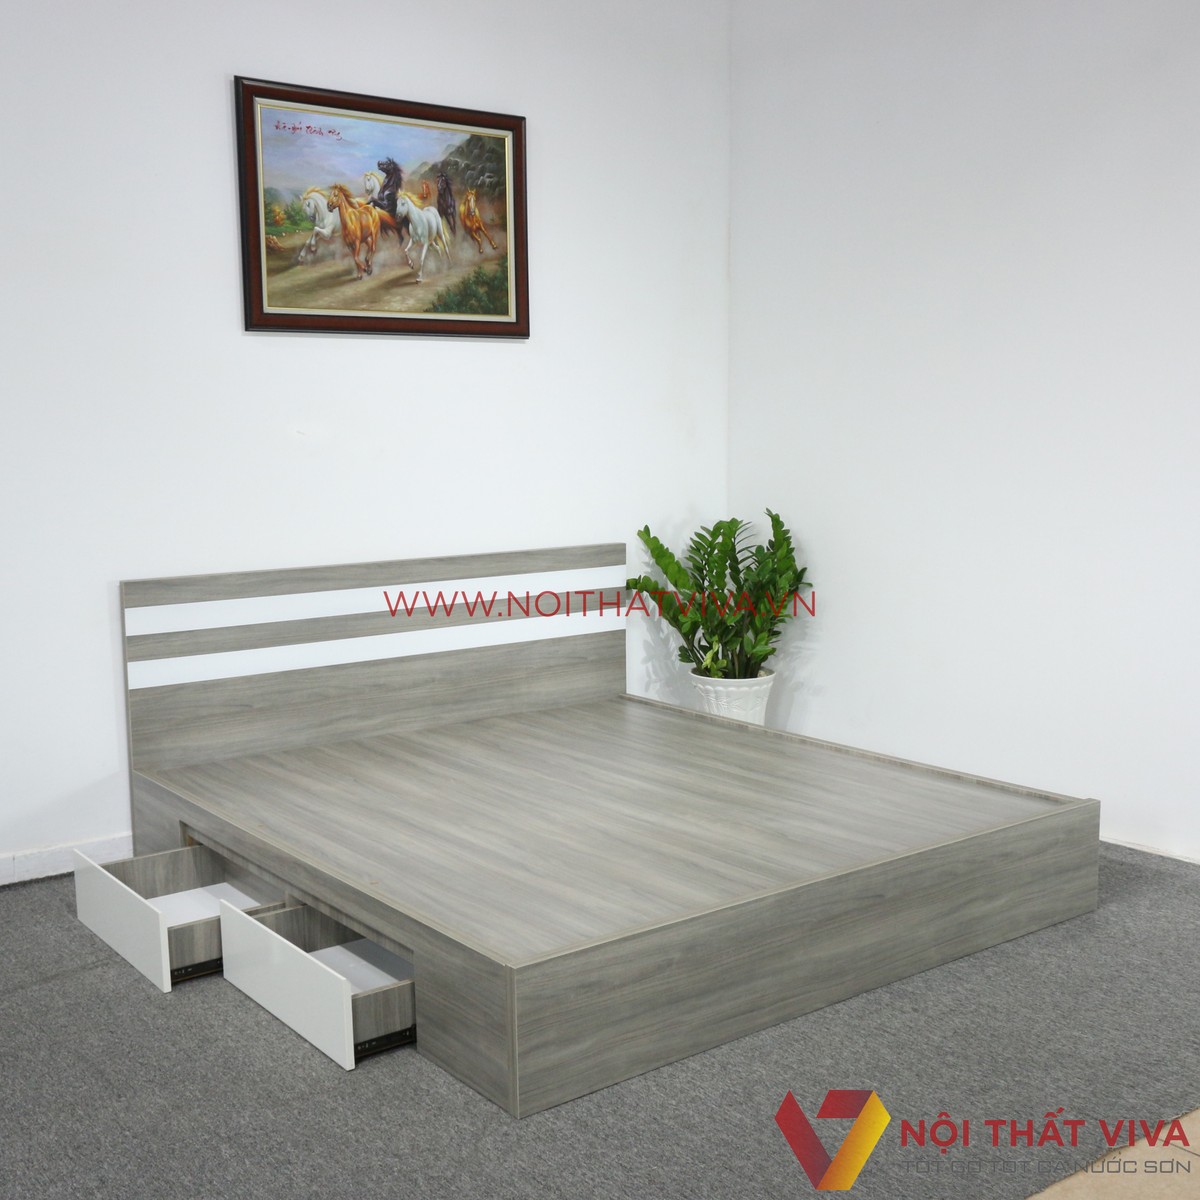 Giường ngủ 1m2 gỗ công nghiệp là sự kết hợp hoàn hảo giữa thiết kế đẹp mắt và tính tiện nghi trong năm